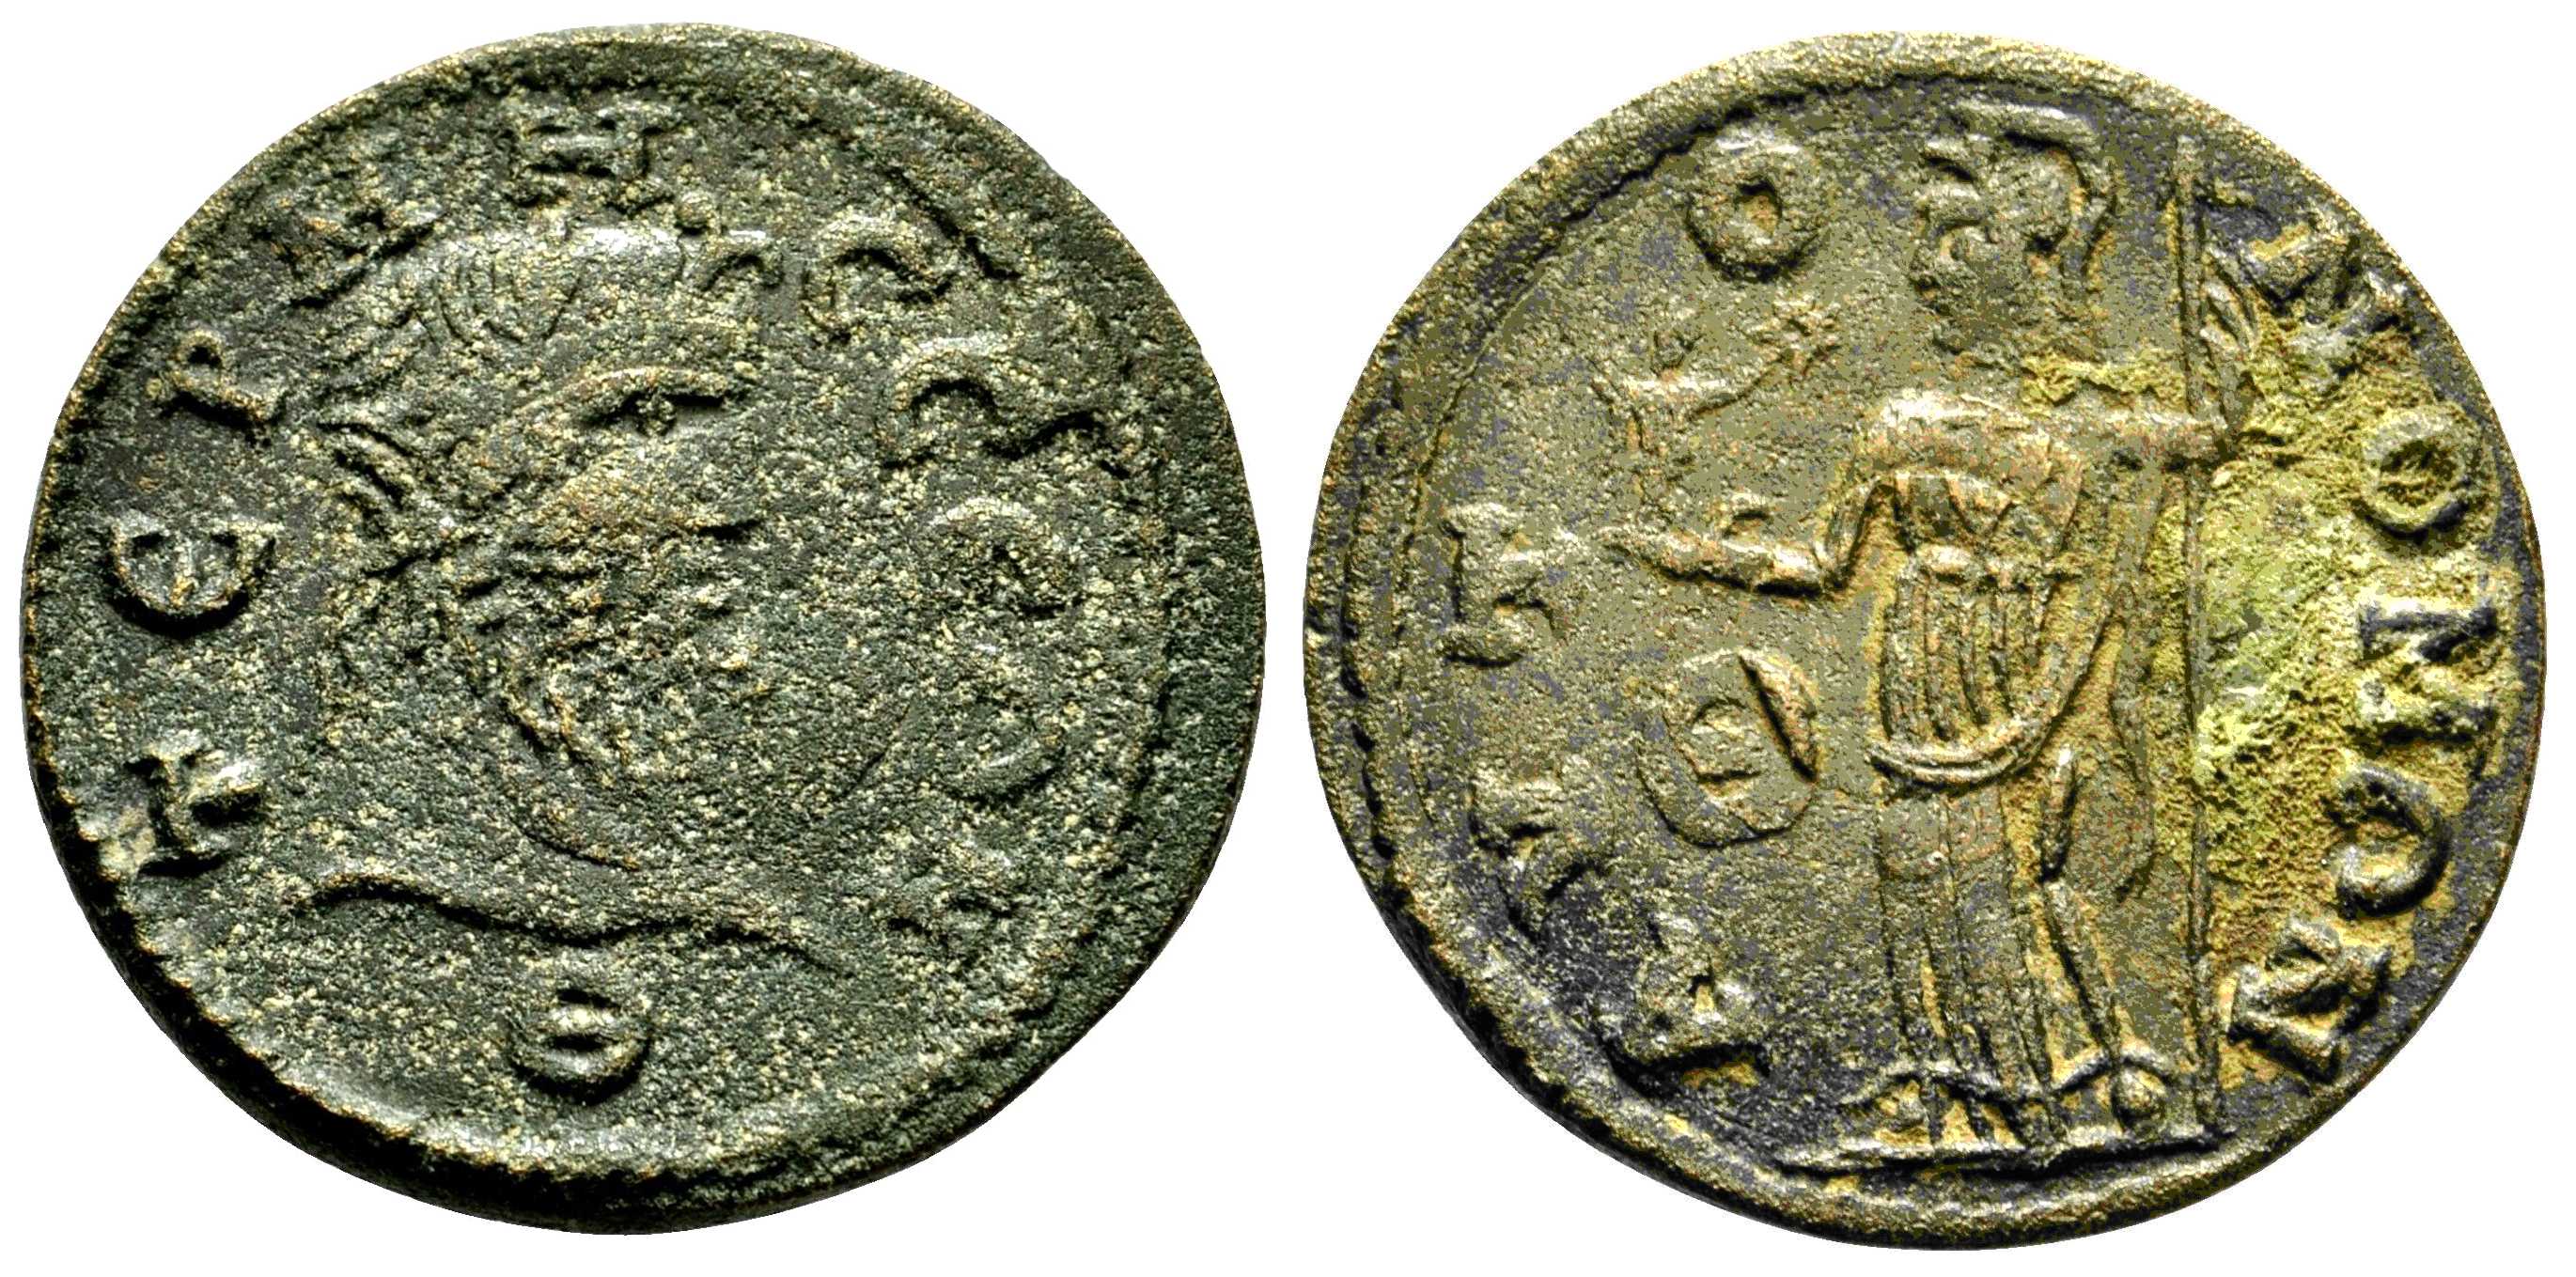 6057 Termessus Pisidia Dominium Romanum AE